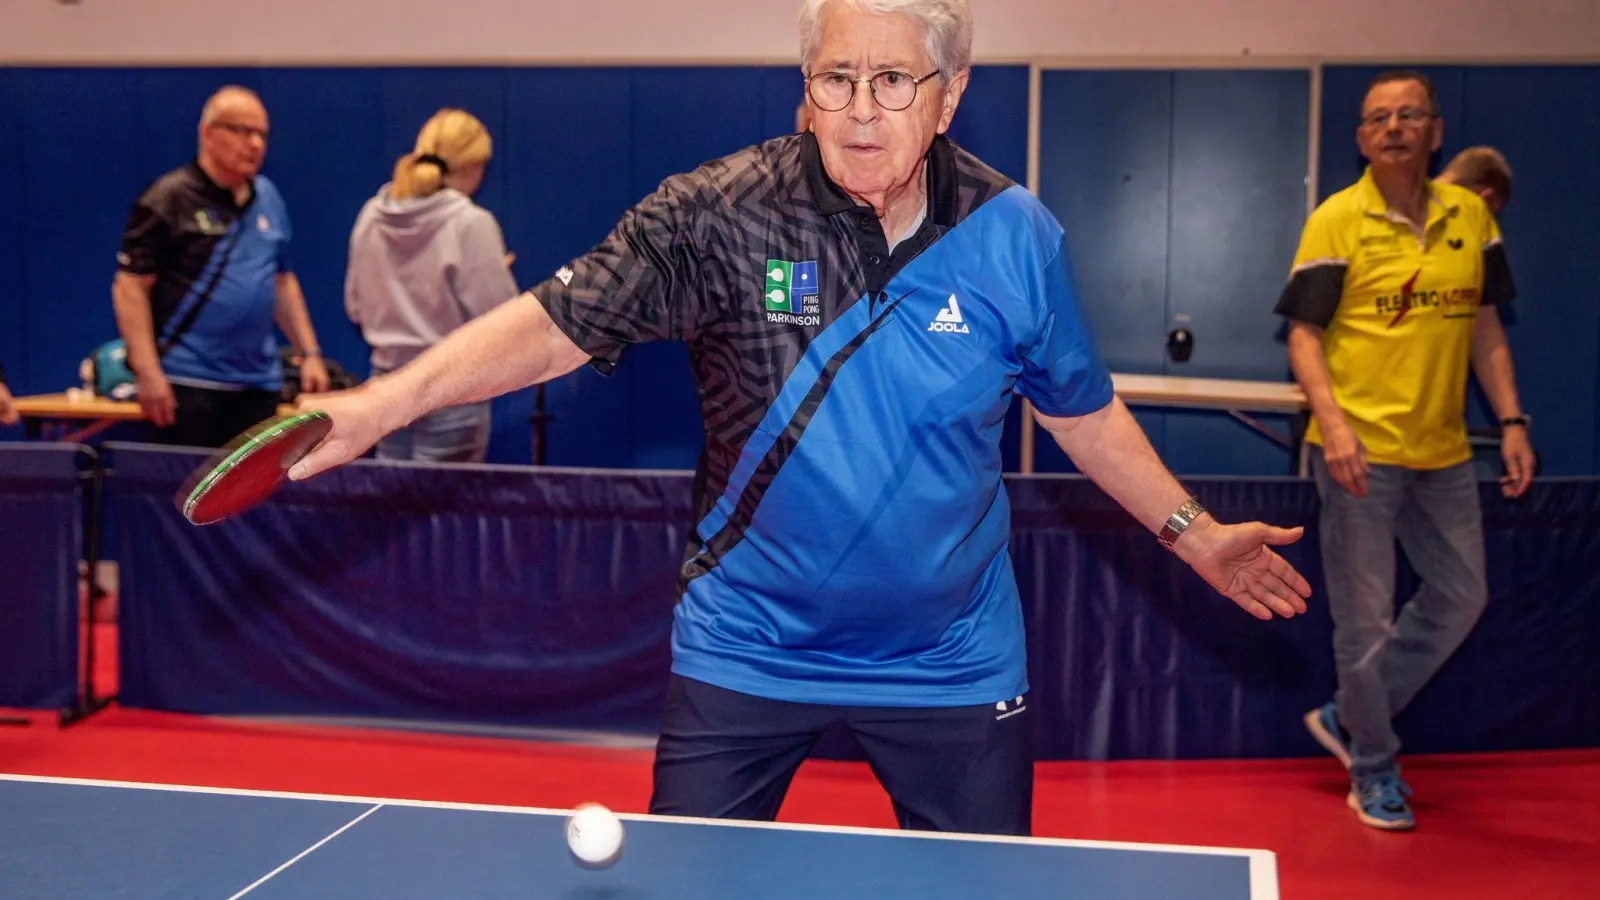 Der Moderator Frank Elstner nimmt am internationalen Tischtennis-Event „PingPongParkinson German Open“ teil. Gegen die fortschreitende Bewegungsverarmung bei Parkinson helfen nicht nur Medikamente, sondern auch aktivierende Therapien. (Foto: Malte Krudewig/dpa)